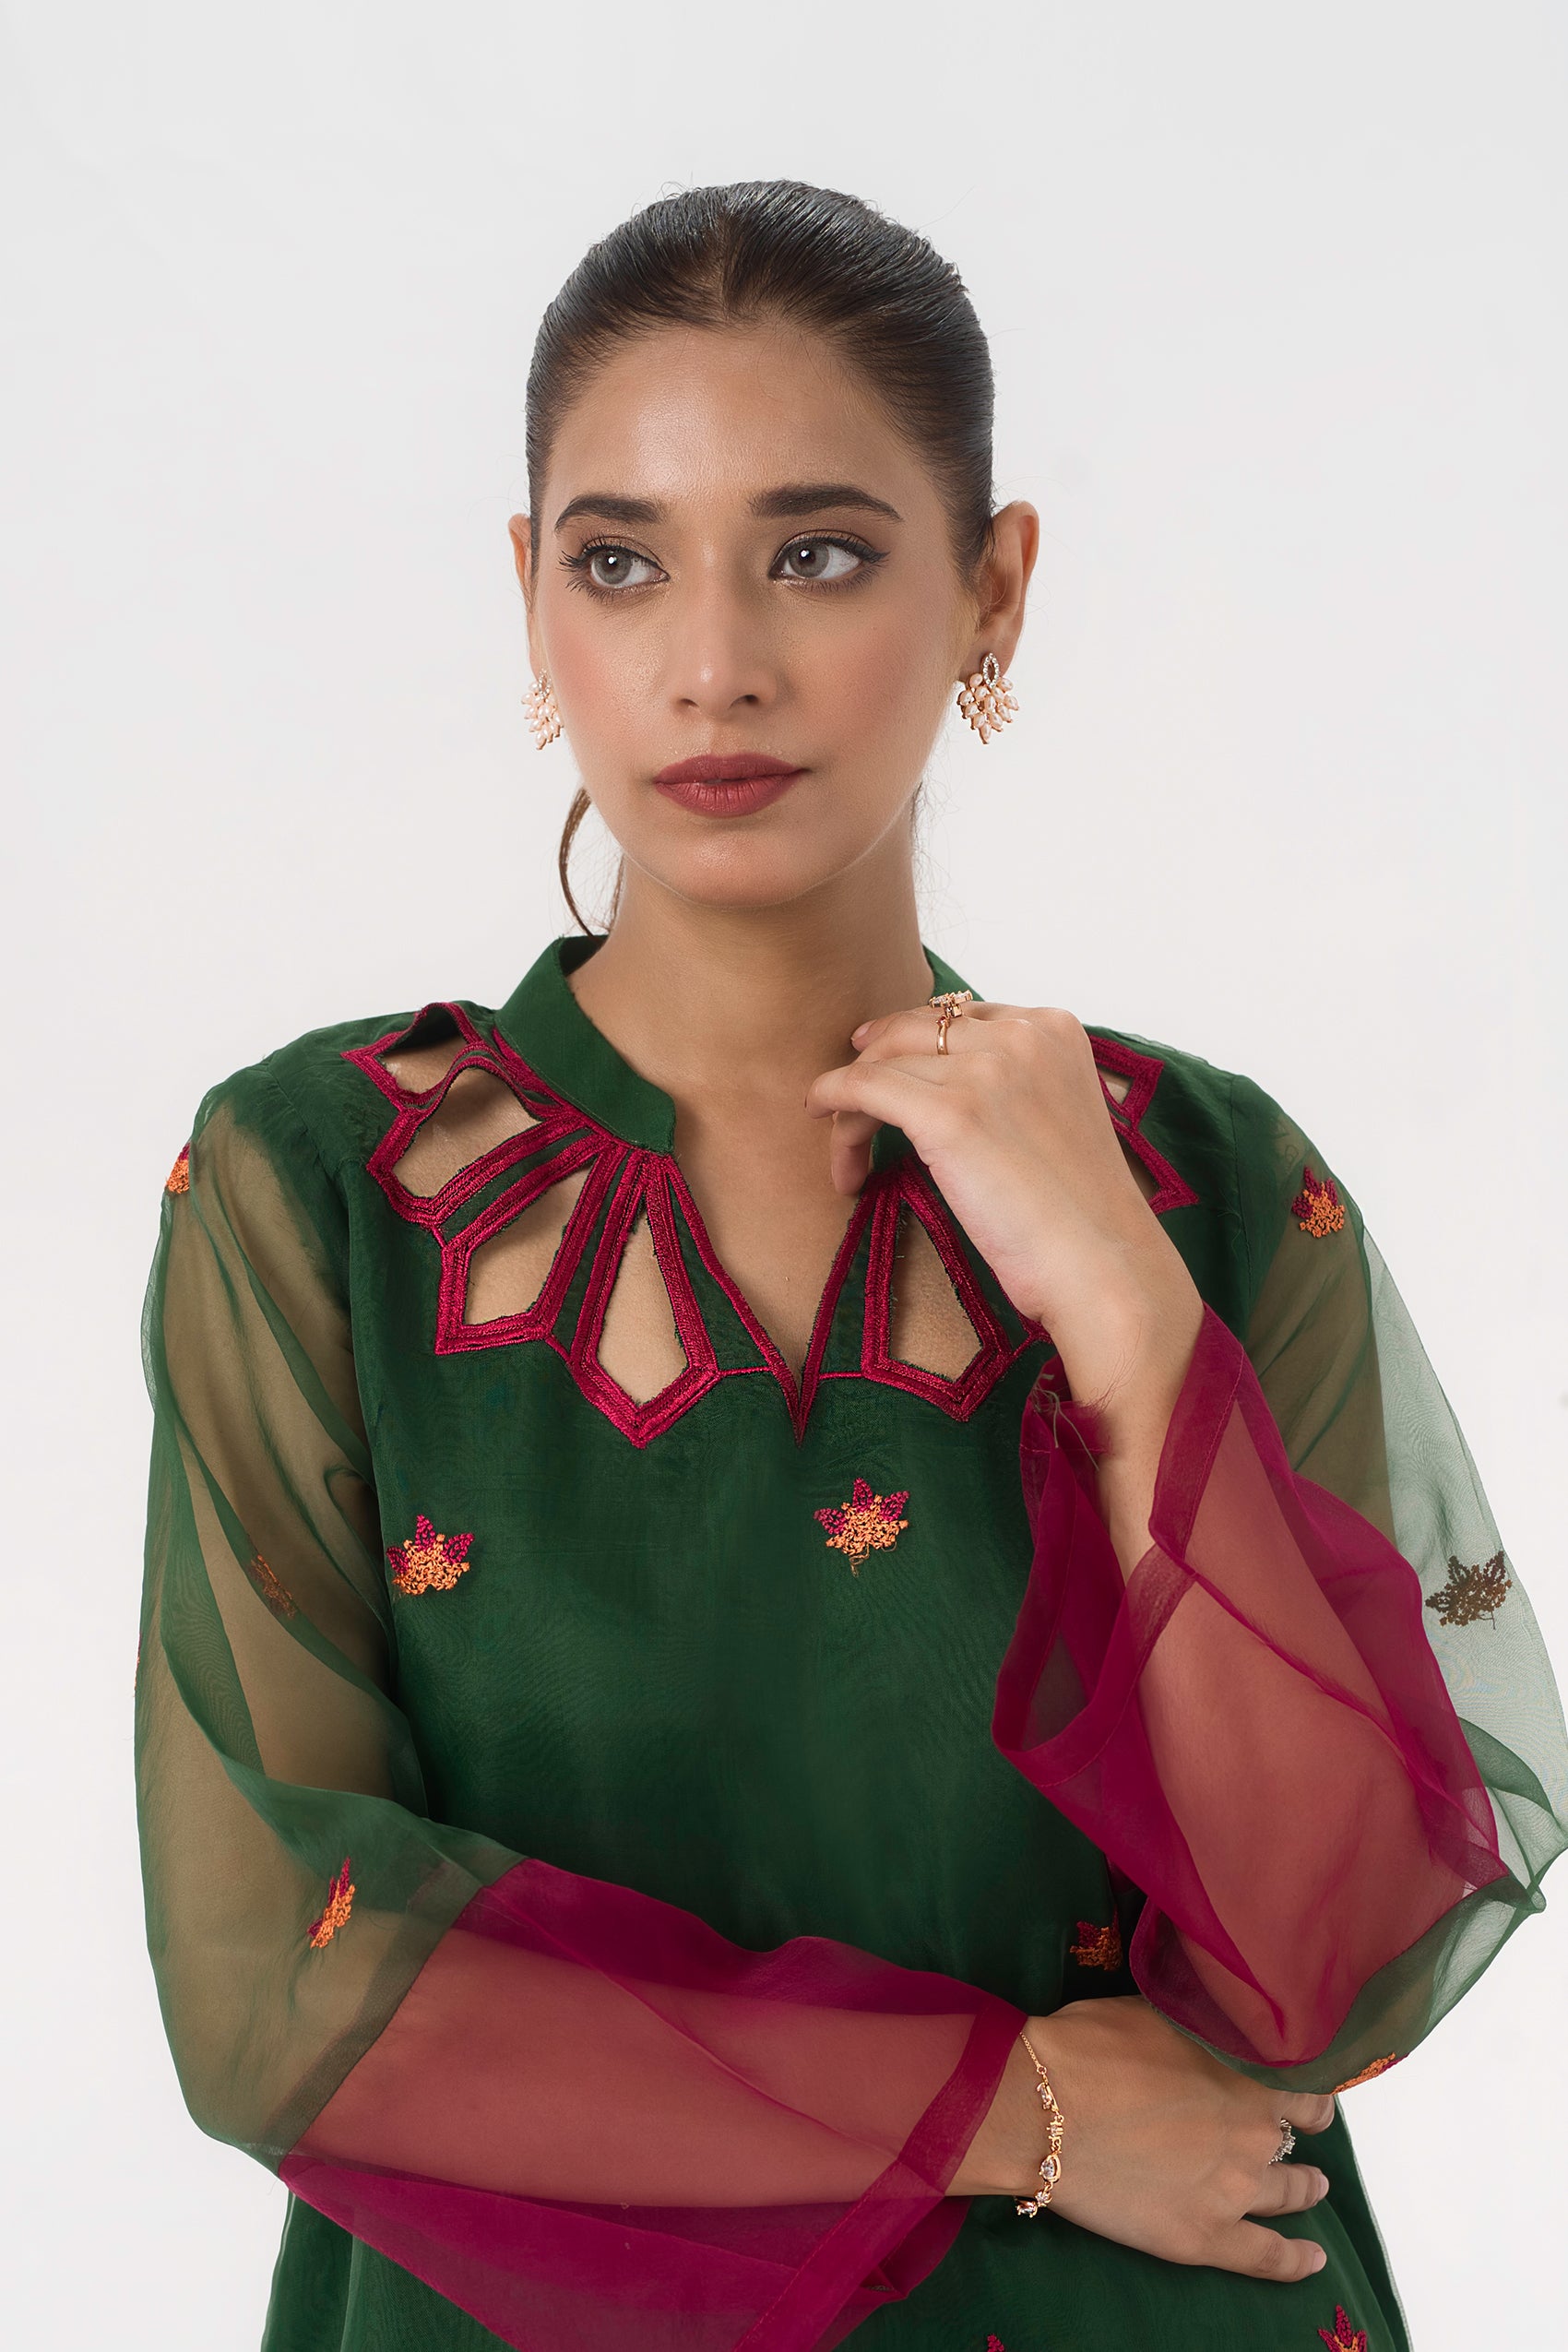 dresses for women in pakistan